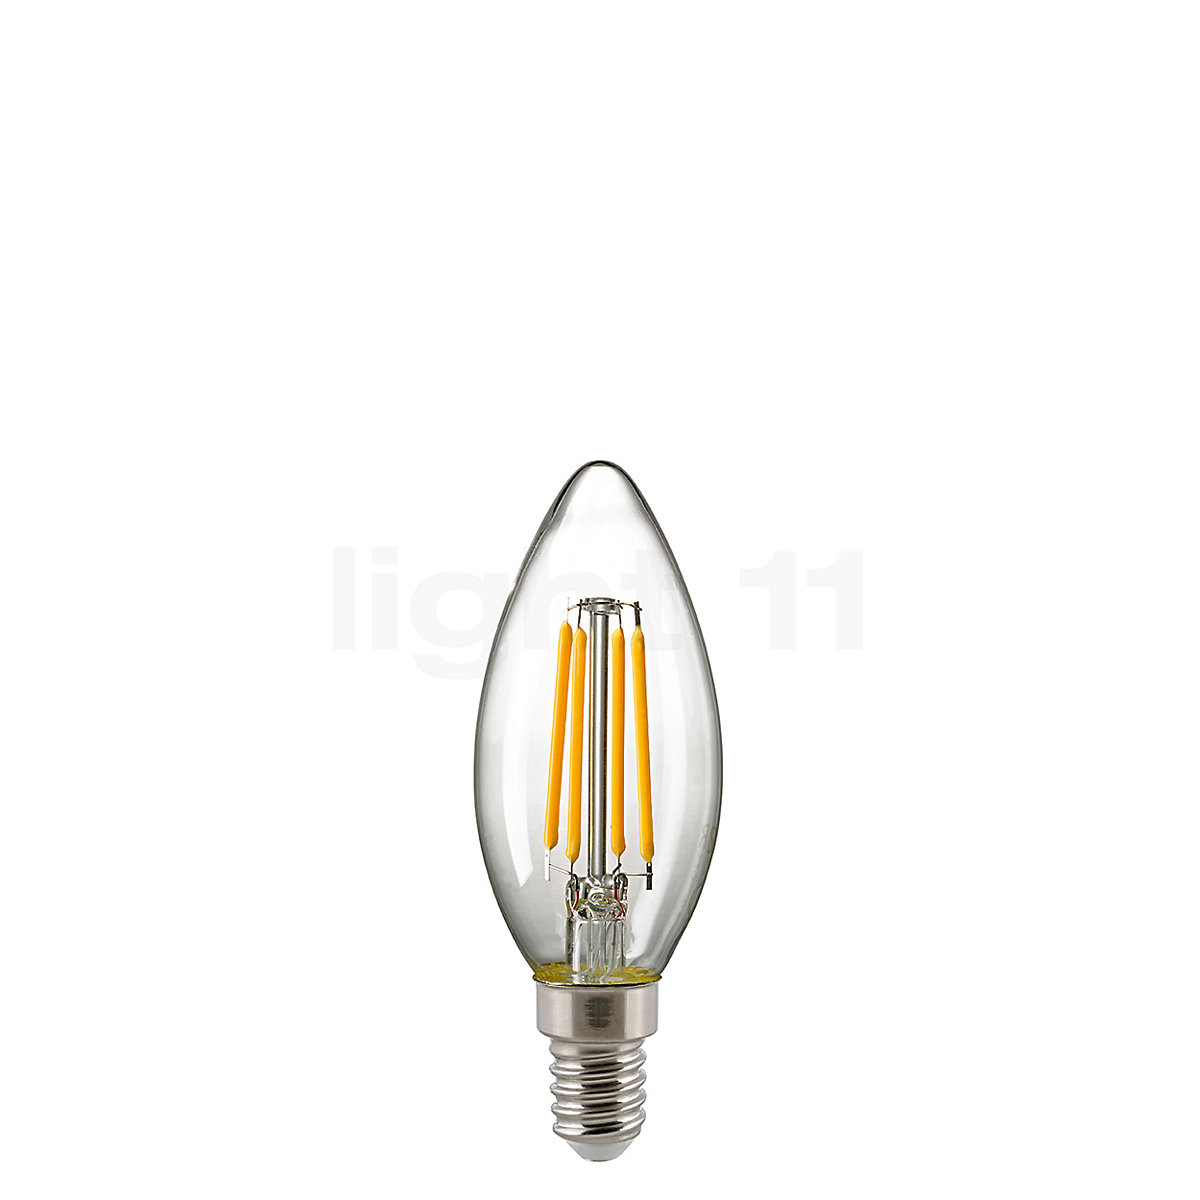 walvis bladzijde Definitief Buy Sigor C35-dim 2,5W/c 927, E14 Filament LED at light11.eu